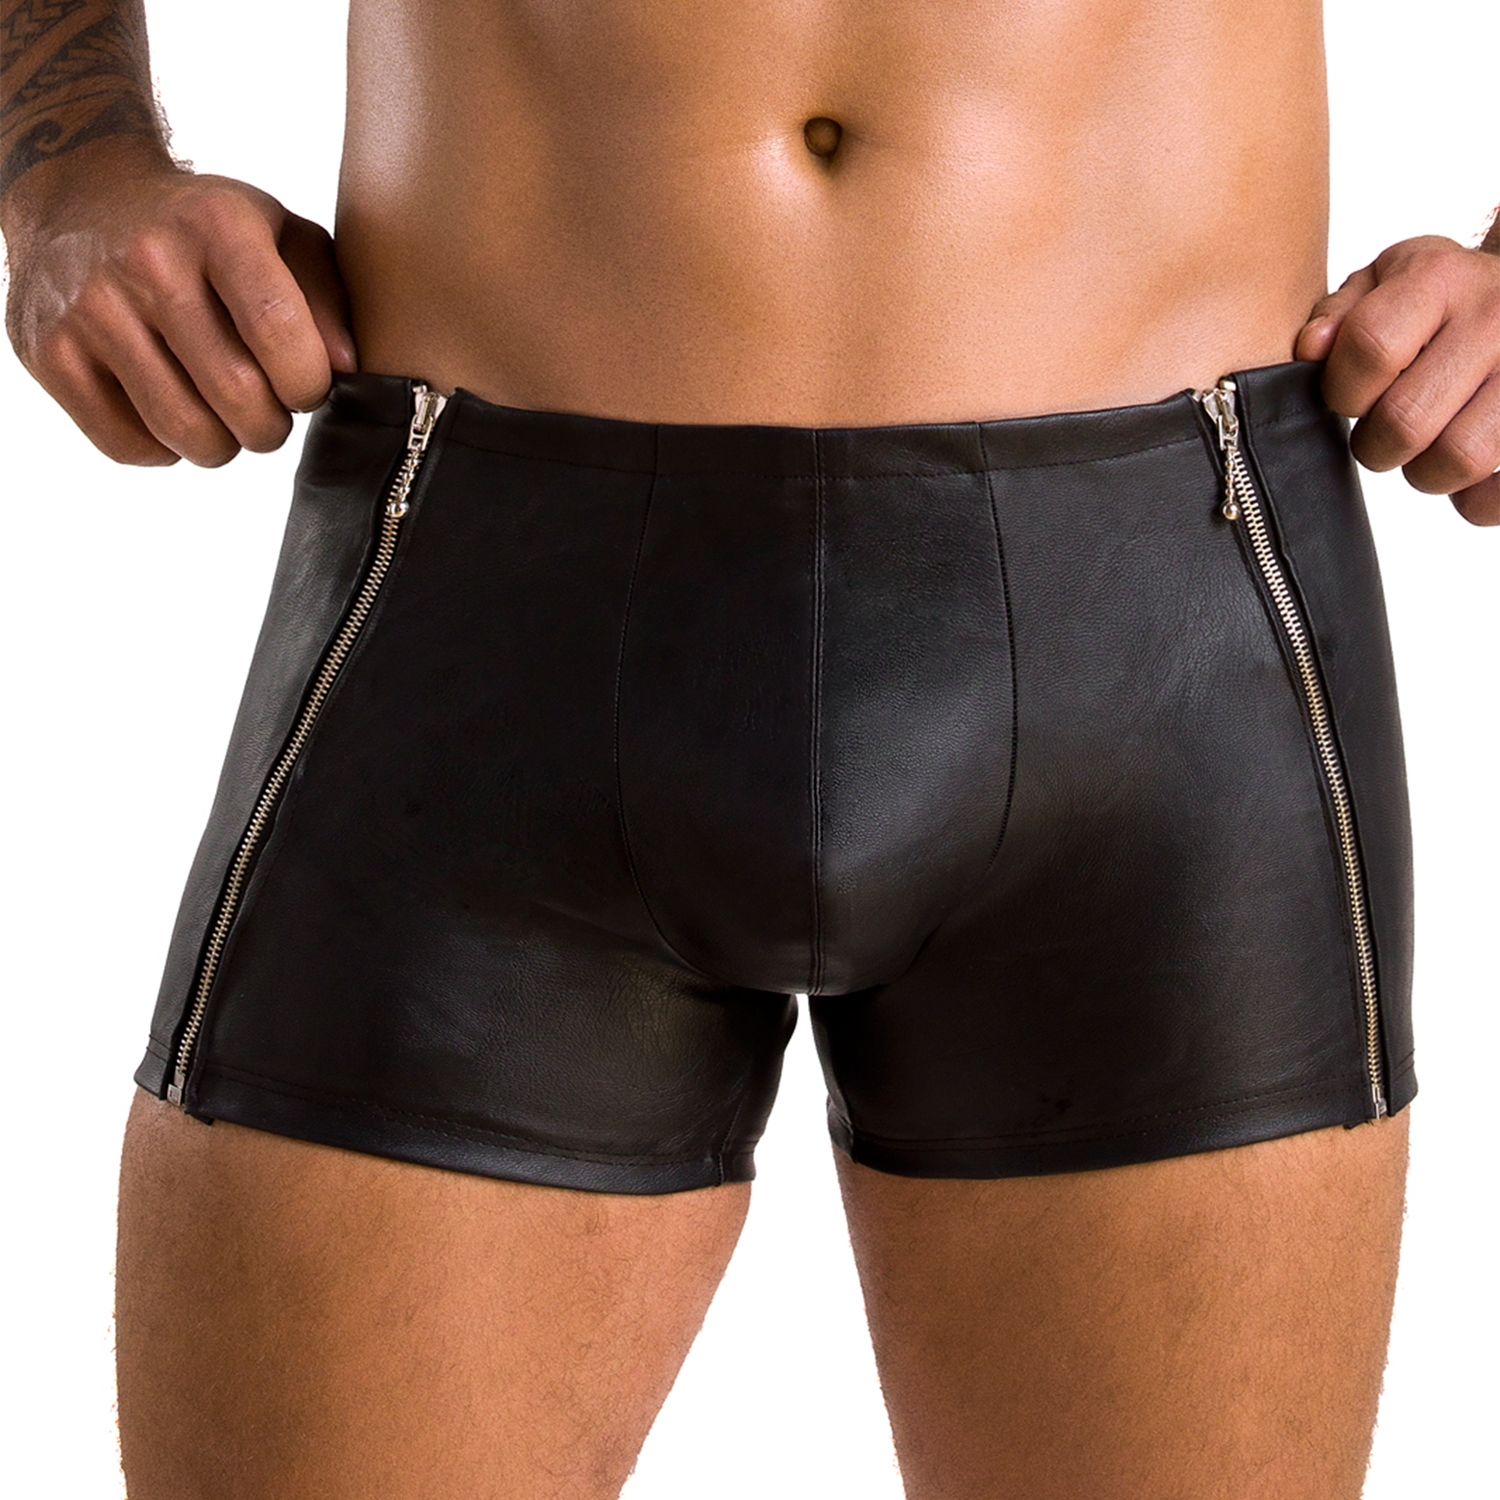 Passion Matt Svarta Shorts - Svart - L/XL | Män//Fetish//Fetishkläder//Till män//Underkläder För Män//Fetish Underkläder//Läderkläder//Passion//Boxer Shorts | Intimast